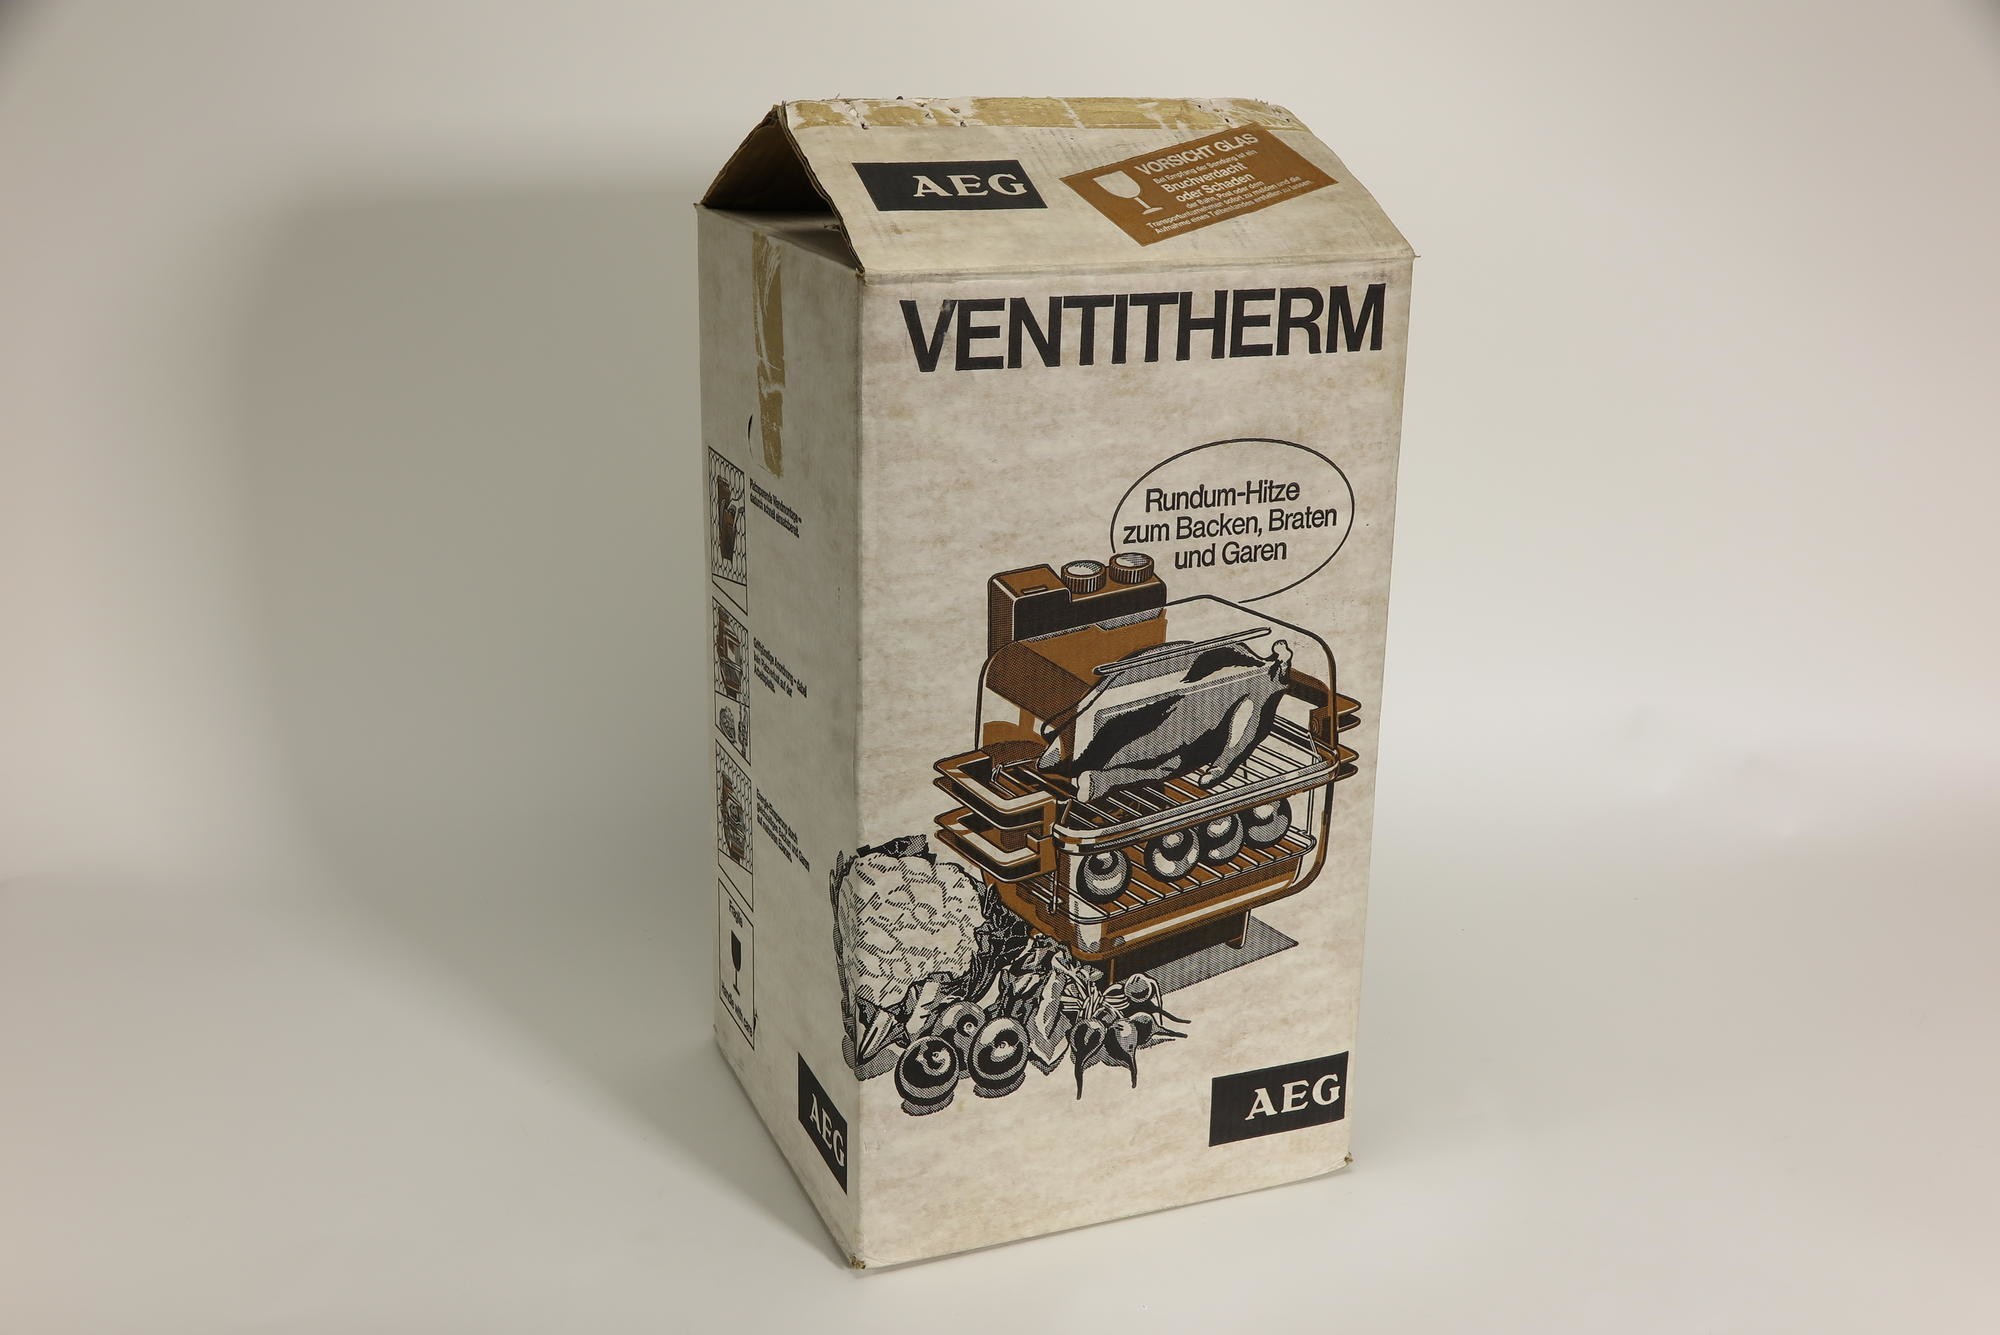 Verpackungskarton, Zubehör zu Elektrischer Heißluftgrill AEG Modell HGA 1600 `Ventitherm` (Stiftung Deutsches Technikmuseum Berlin CC0)